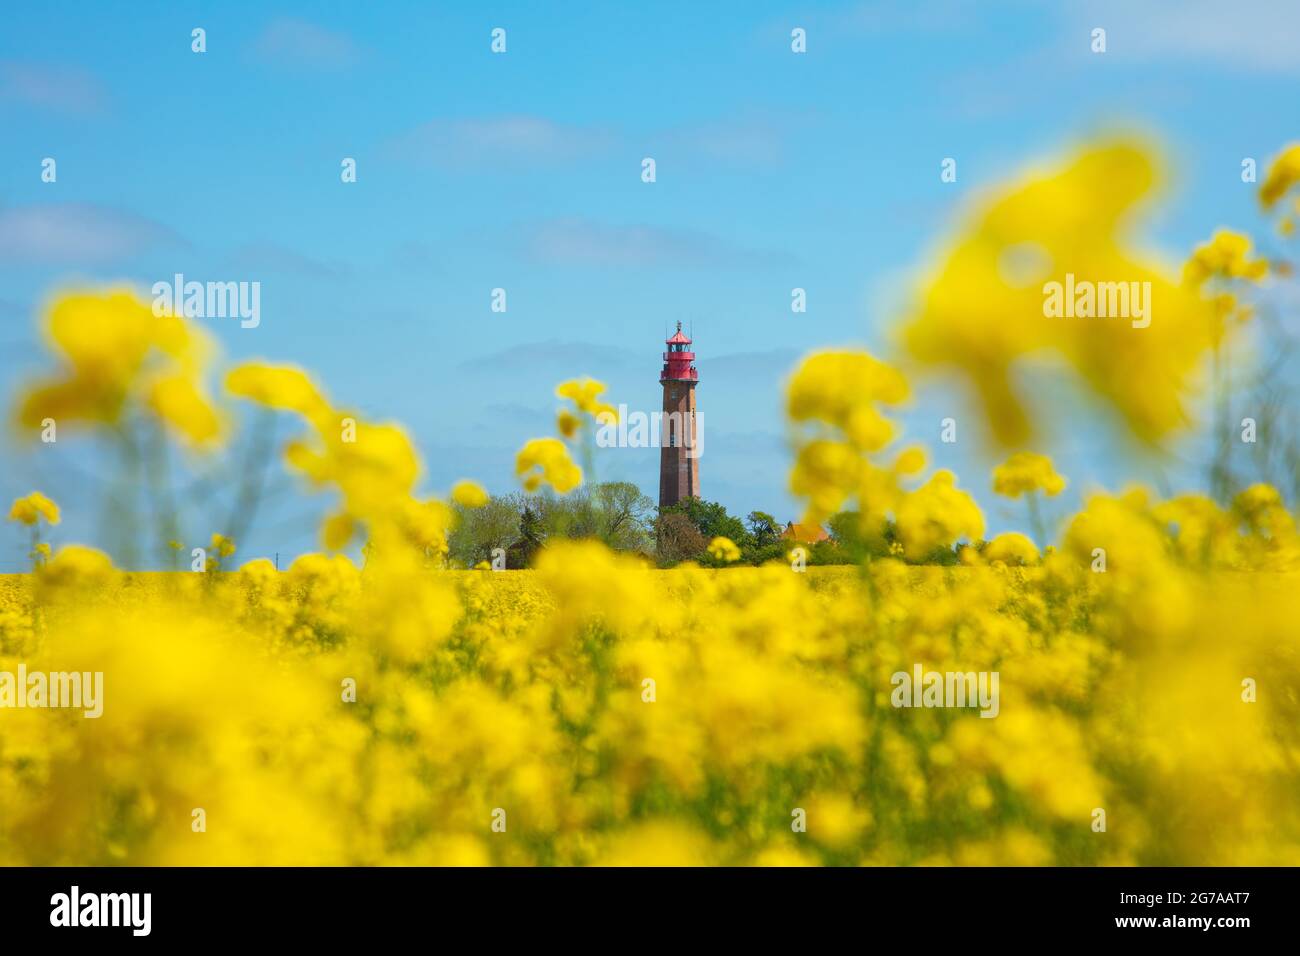 Schleswig-Holstein, île de Fehmarn dans la mer Baltique. Flügge, vue sur les champs au phare historique de Flügge au printemps. Banque D'Images